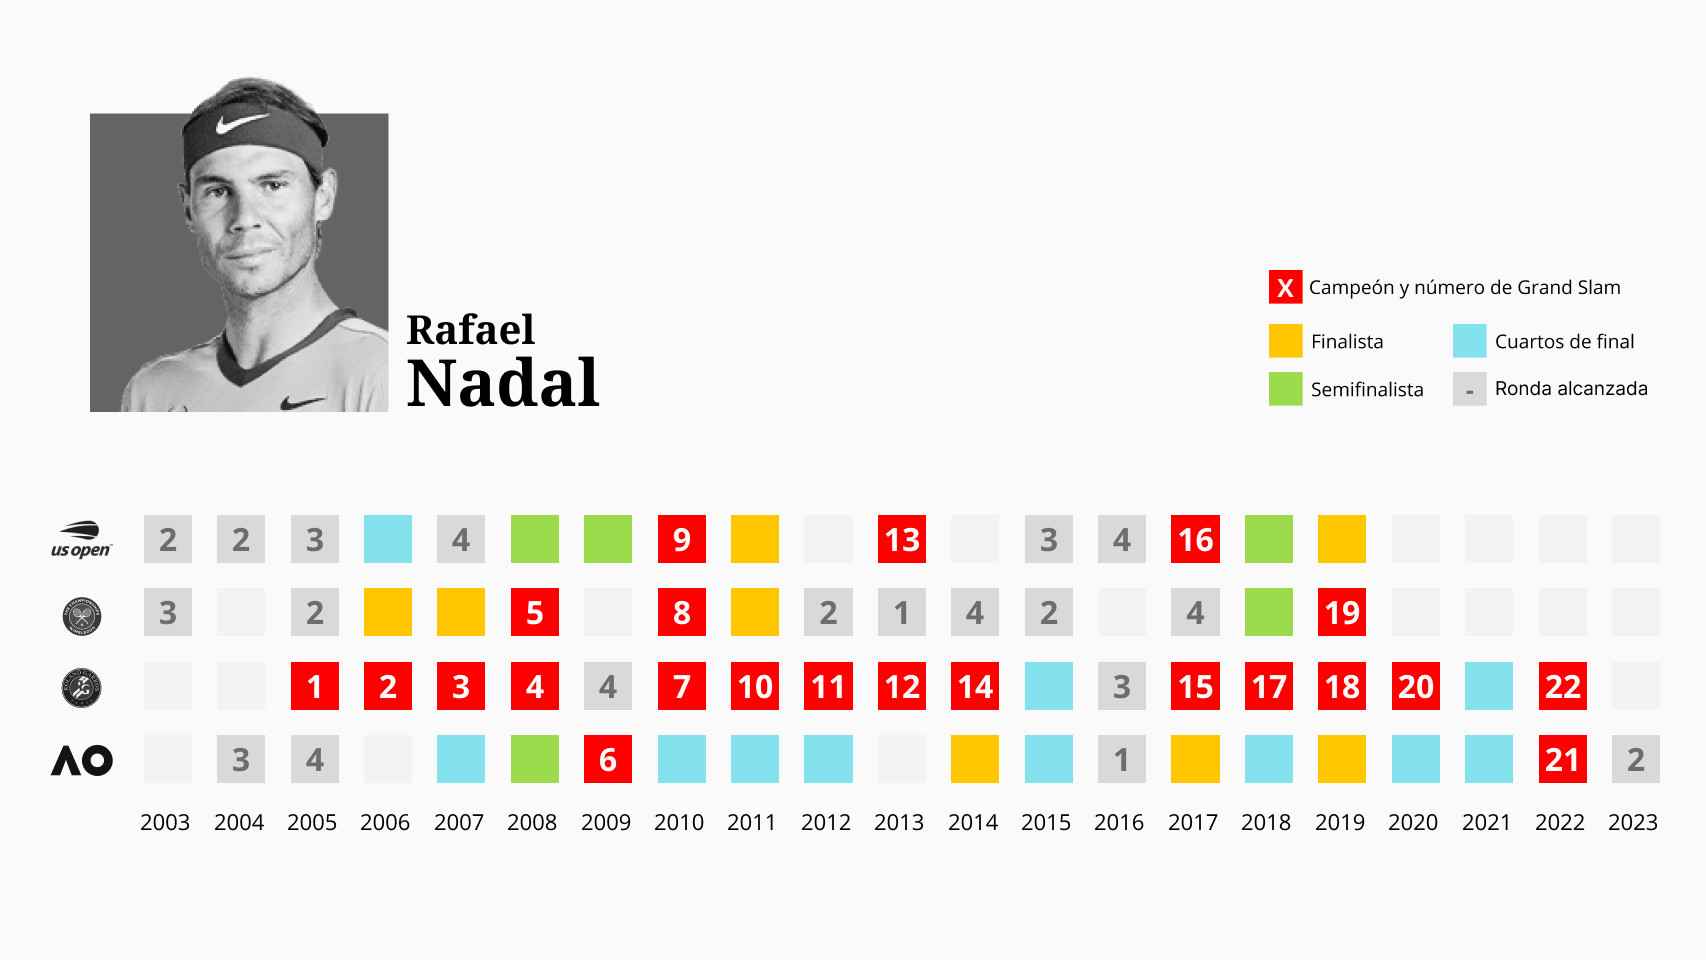 Los Grand Slam que ha ganado Rafa Nadal a lo largo de su carrera.